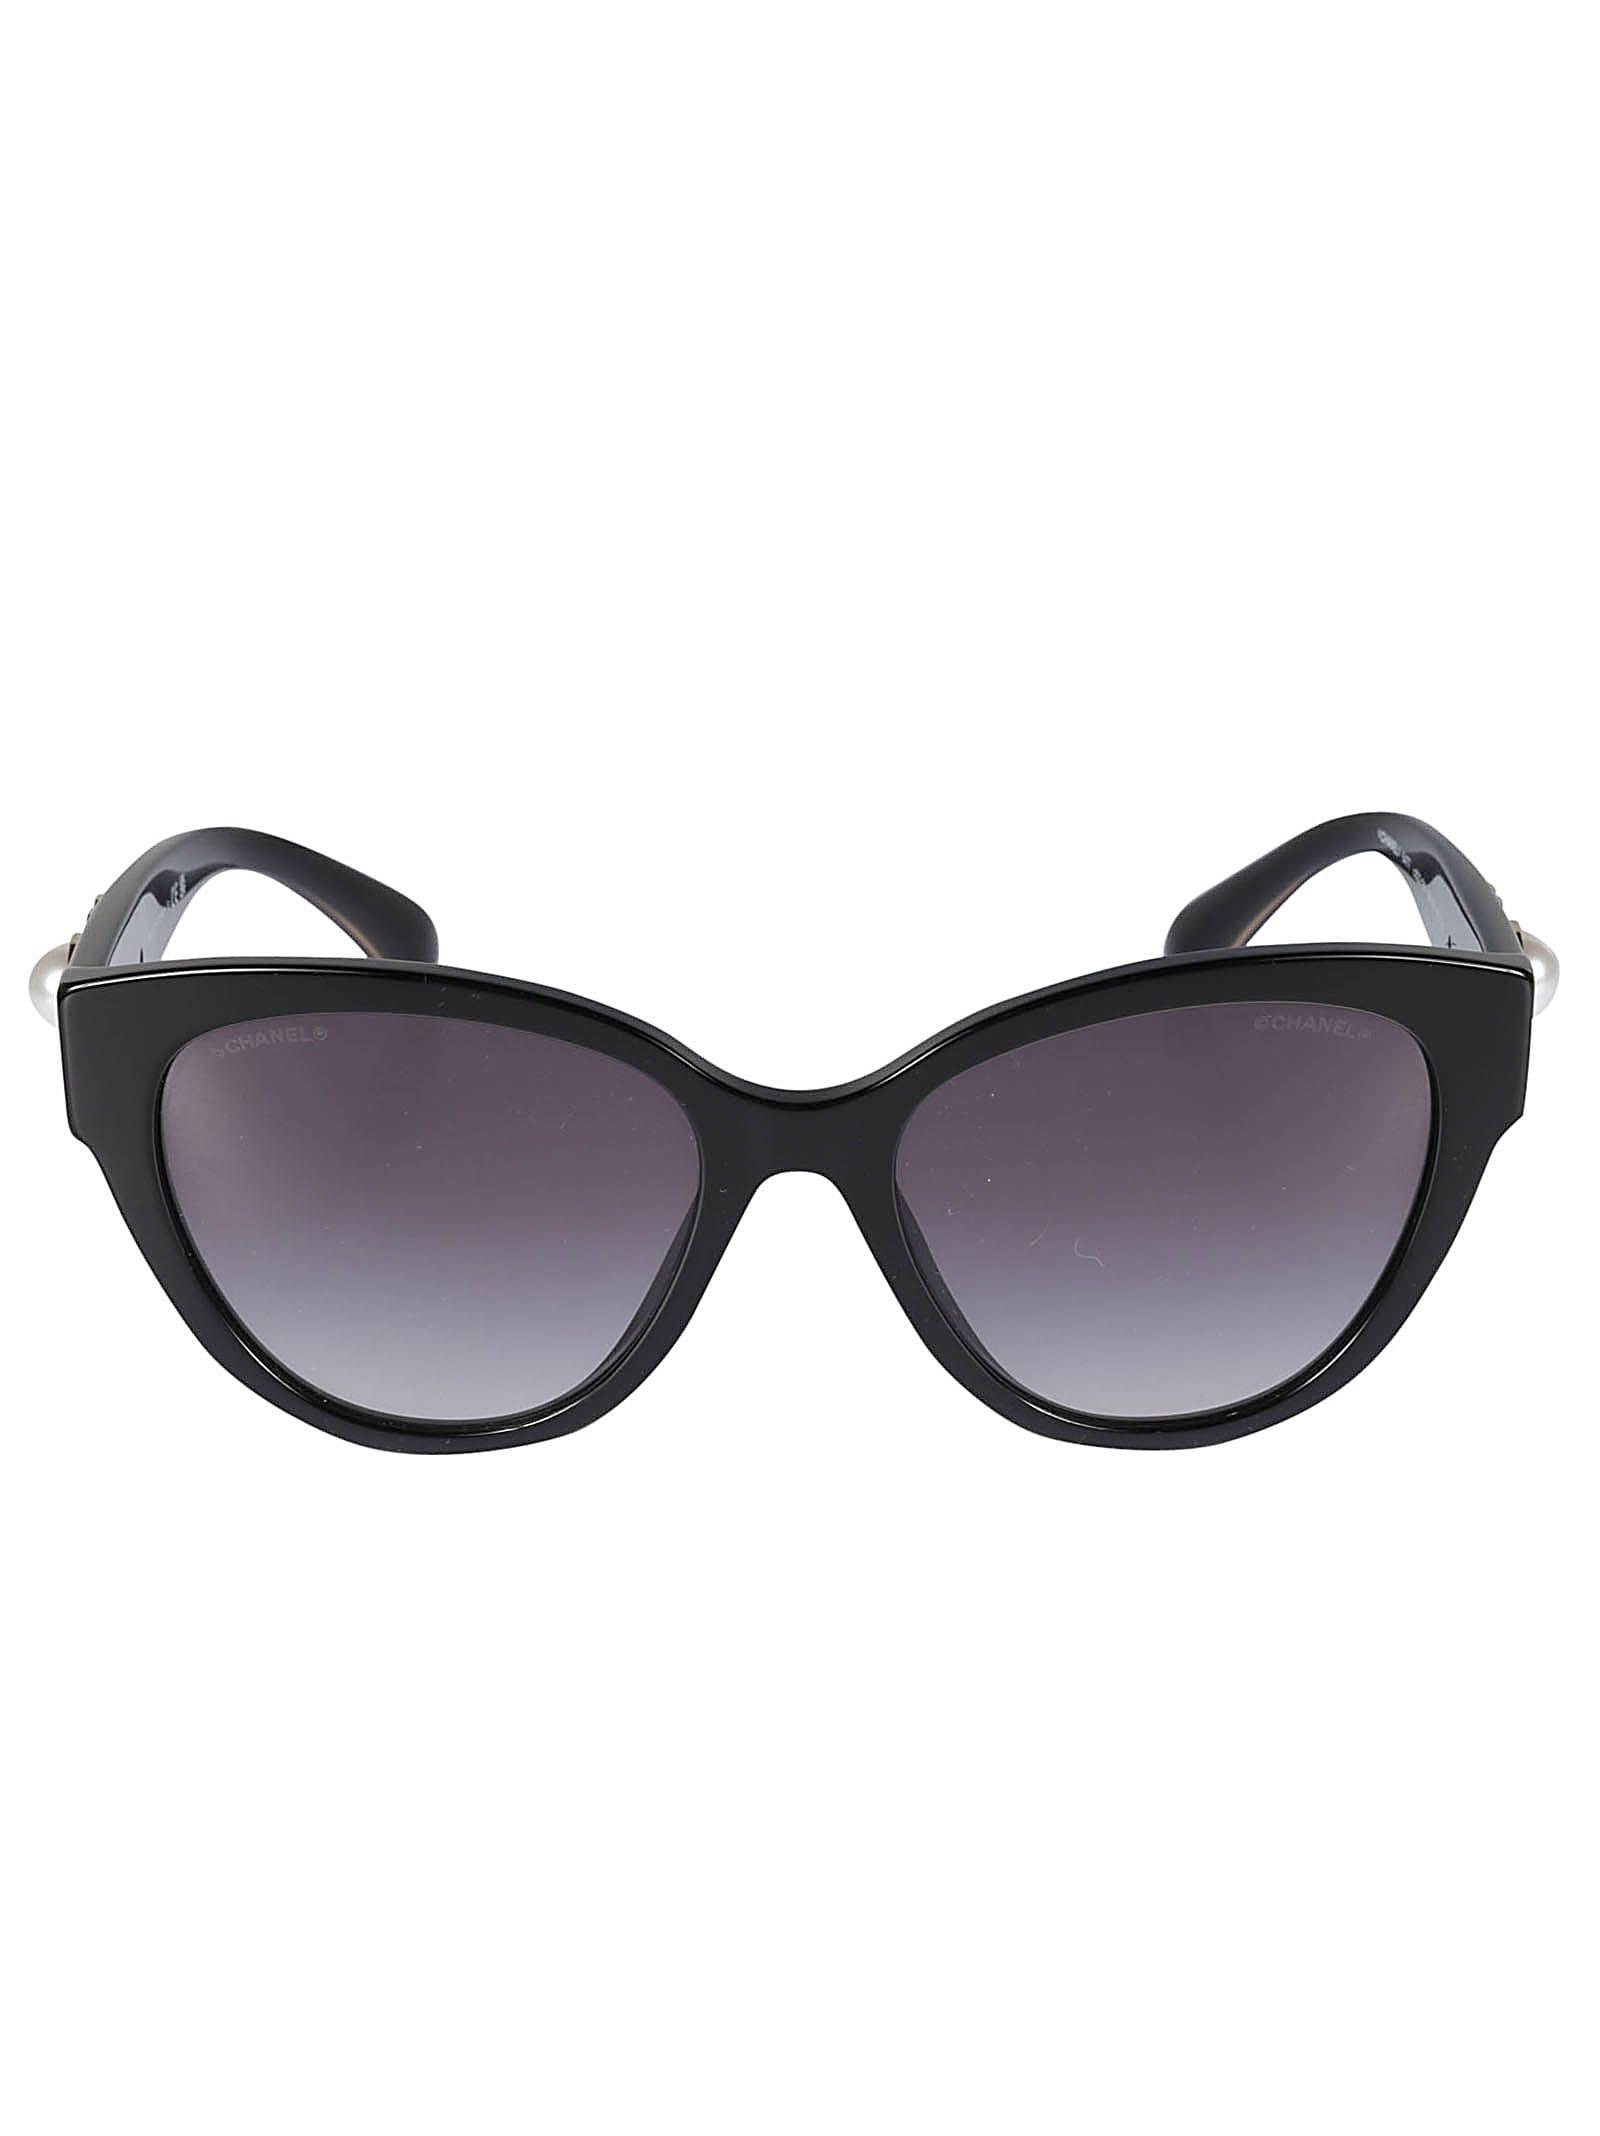 Chanel 5492 Sunglasses Black/Grey Butterfly Women